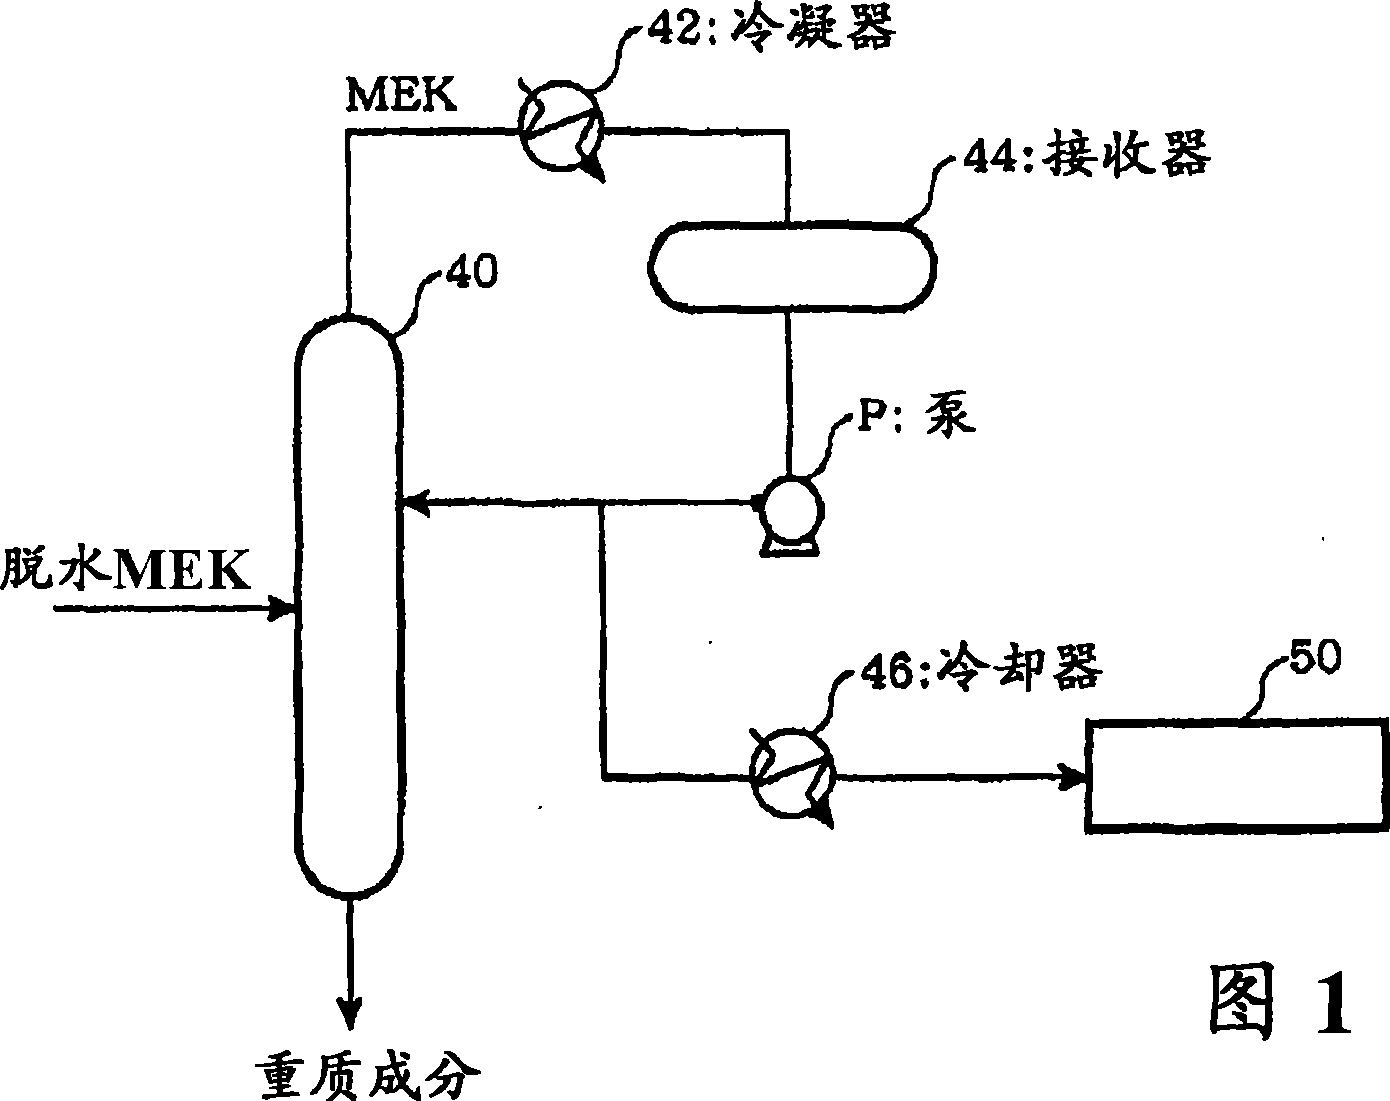 Method of preventing generation of heavy ingredient of methyl ethyl ketone